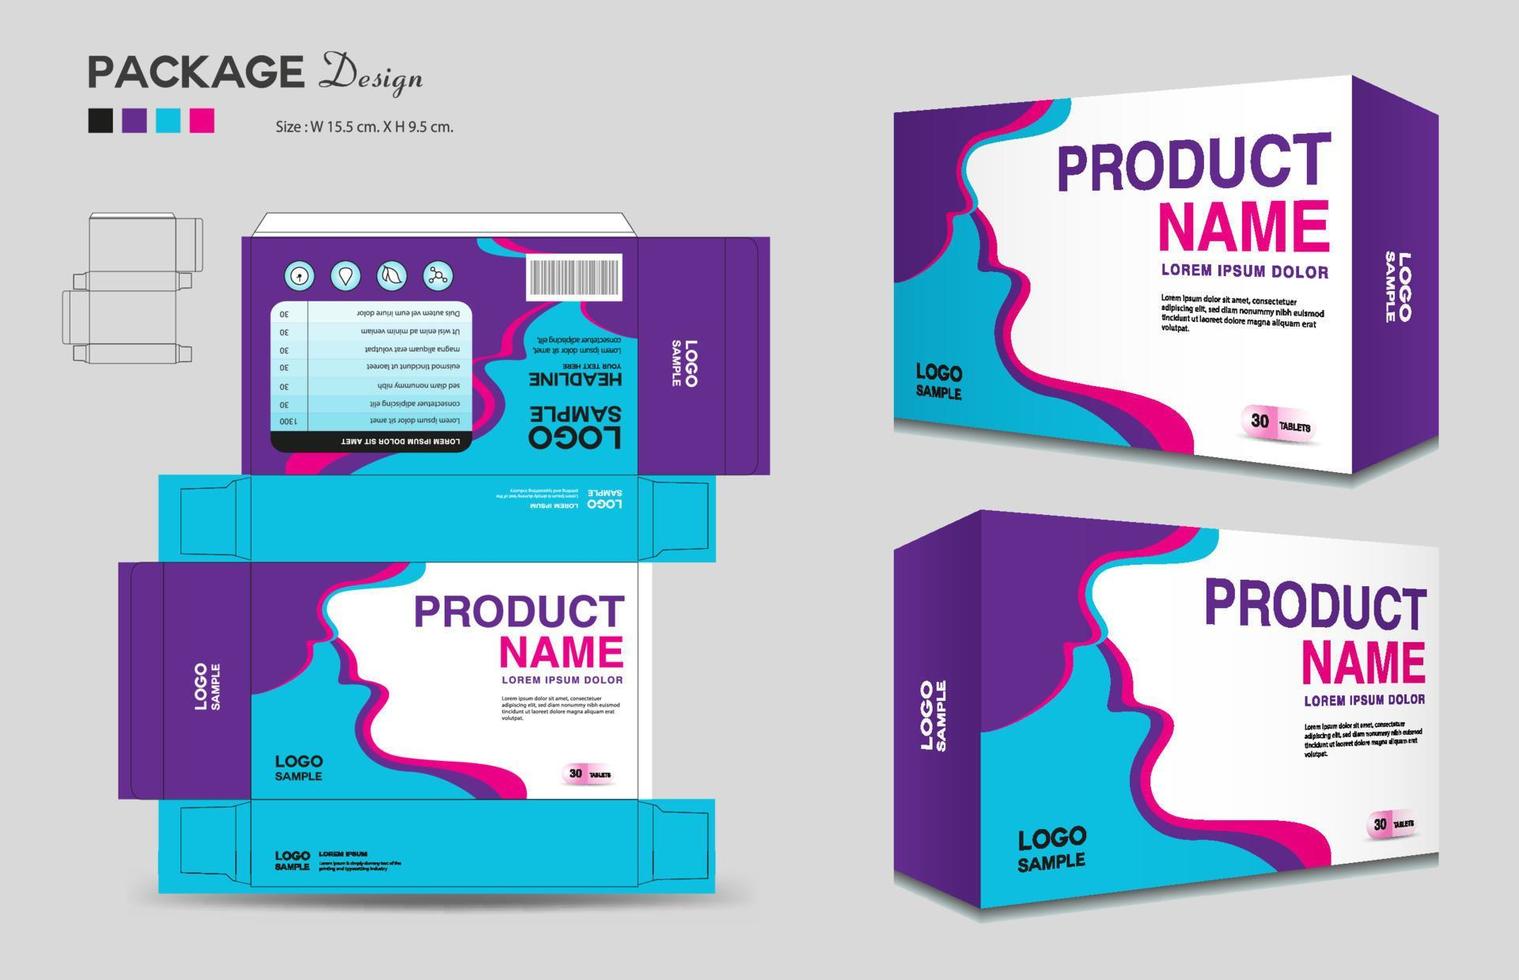 Design von Kosmetikboxen, Designvorlage für medizinische Verpackungen, Verpackungsdesign für Ergänzungsboxen, Etikettendesign, Gesundheitsetikett, kreativer Ideenvektor für Verpackungen, Boxumriss, realistisches Mock-up von 3D-Boxen, Vektor